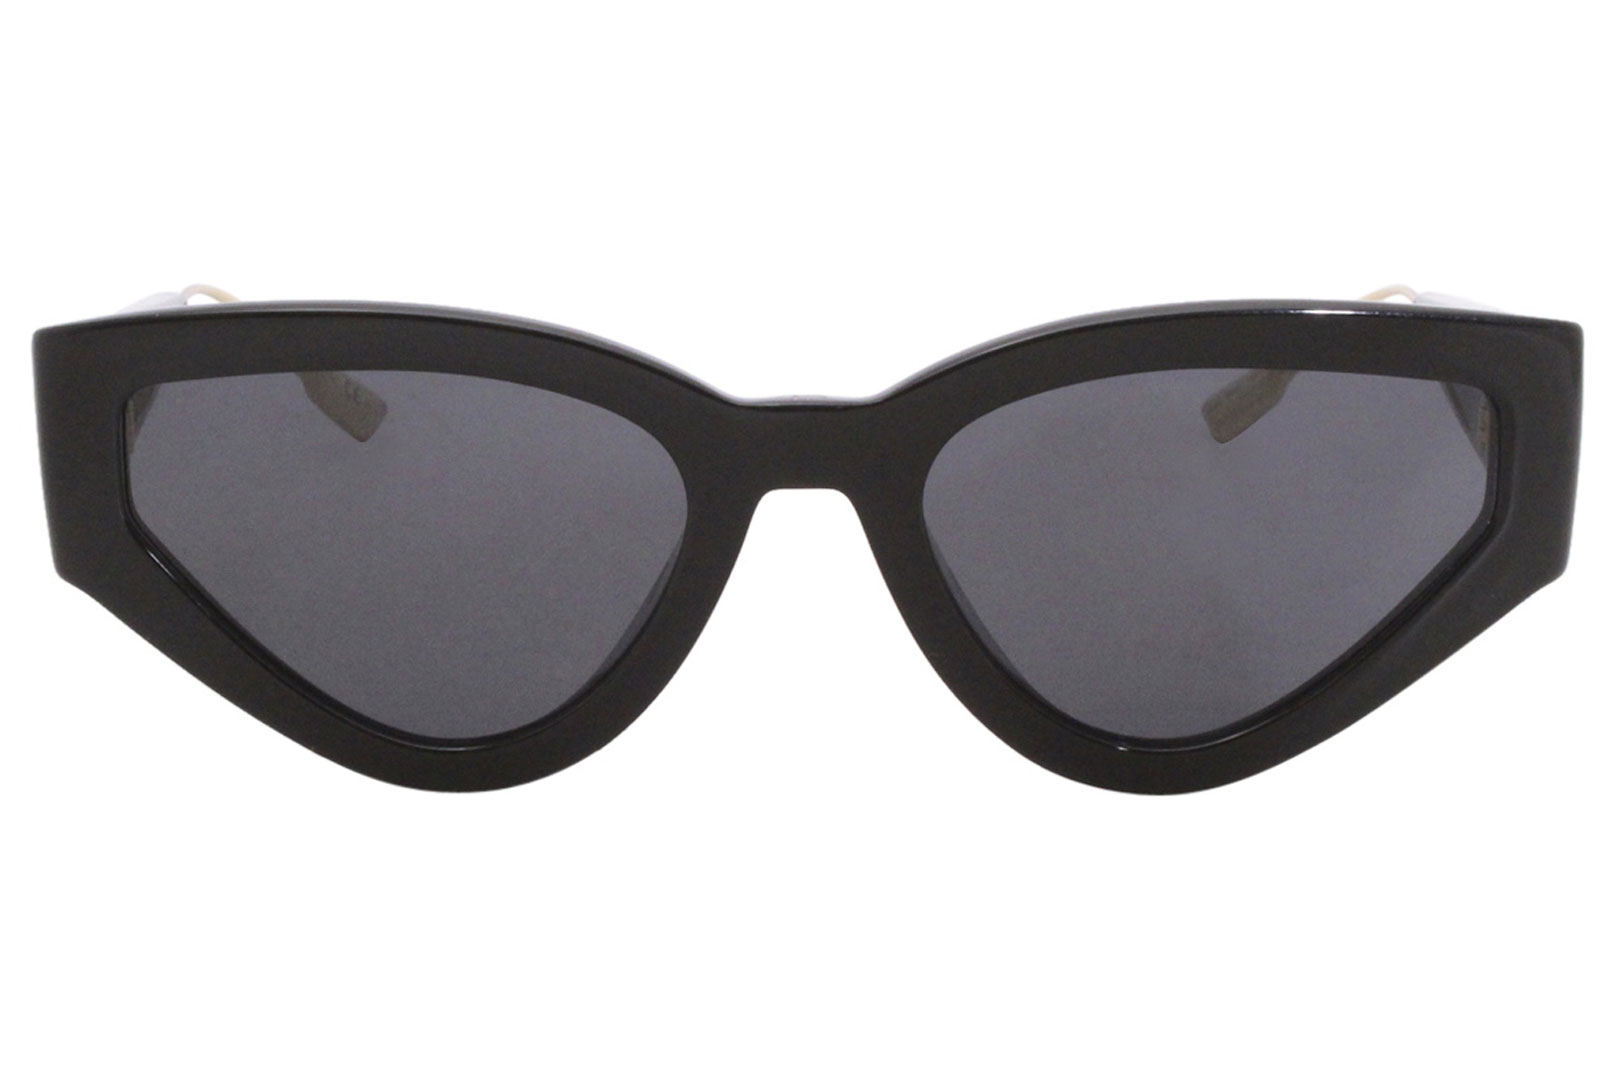 Catstyledior1 sunglasses Dior Brown in Plastic  21740399